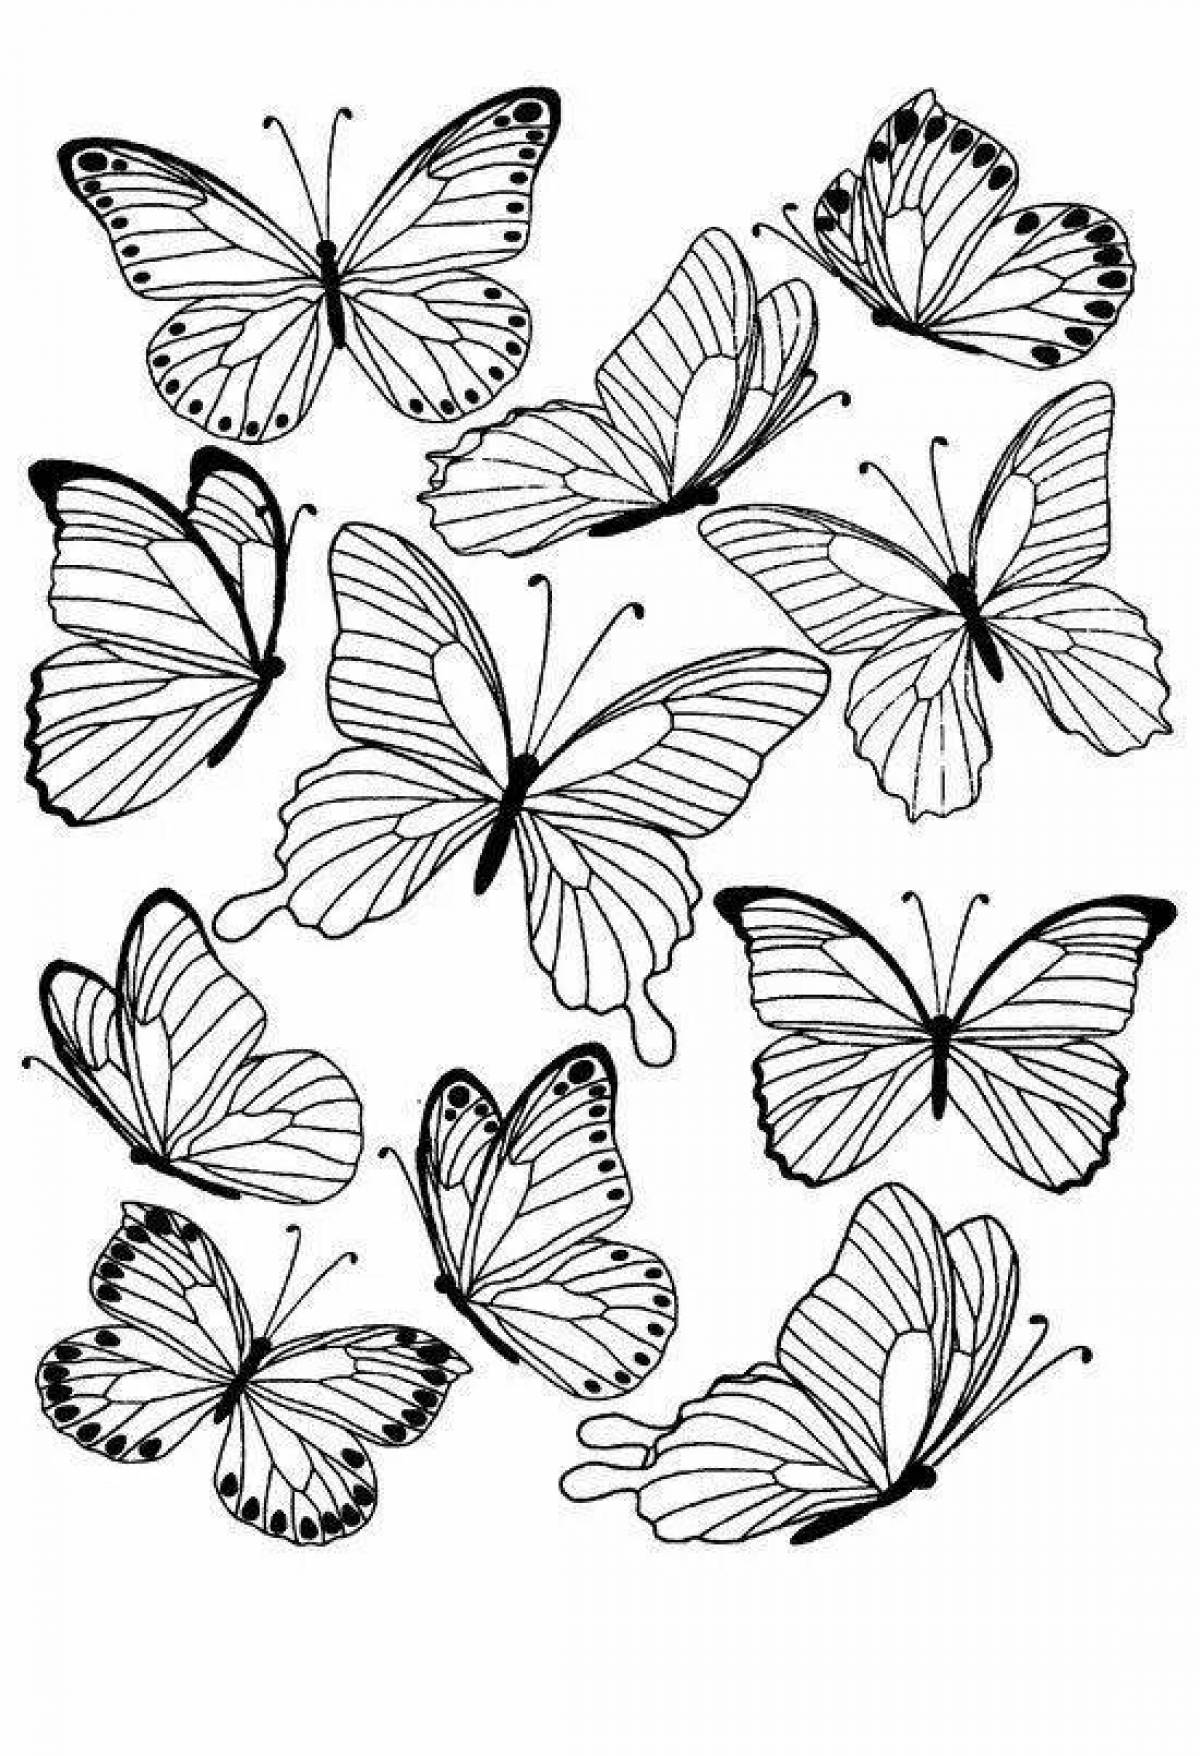 Filling many butterflies on one sheet